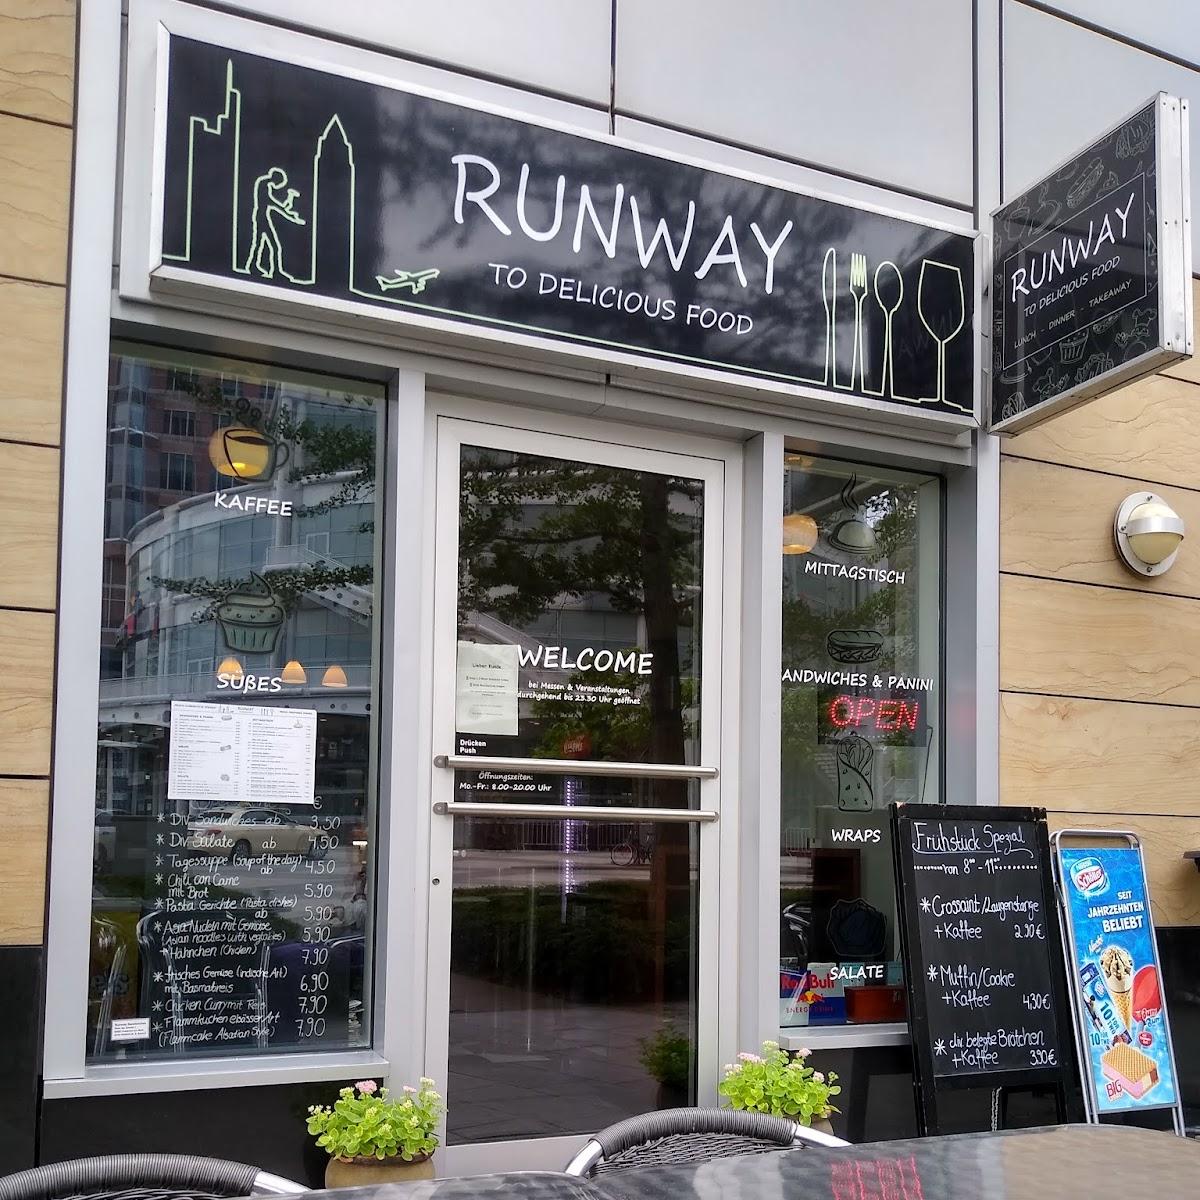 Restaurant "Runway Sandwiches" in Frankfurt am Main